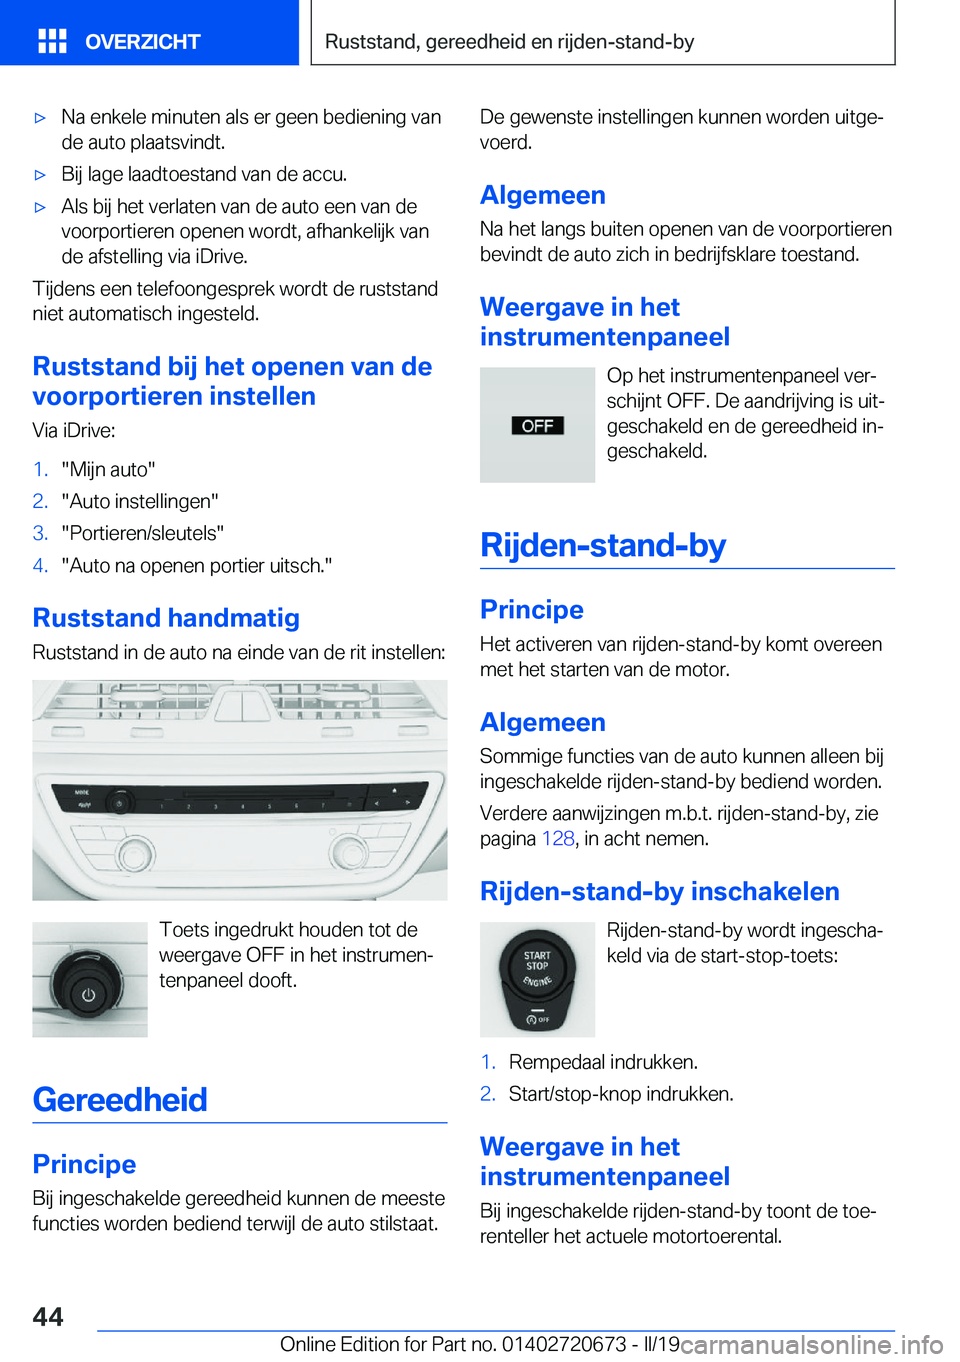 BMW M5 2019  Instructieboekjes (in Dutch) 'x�N�a��e�n�k�e�l�e��m�i�n�u�t�e�n��a�l�s��e�r��g�e�e�n��b�e�d�i�e�n�i�n�g��v�a�n�d�e��a�u�t�o��p�l�a�a�t�s�v�i�n�d�t�.'x�B�i�j��l�a�g�e��l�a�a�d�t�o�e�s�t�a�n�d��v�a�n��d�e��a�c